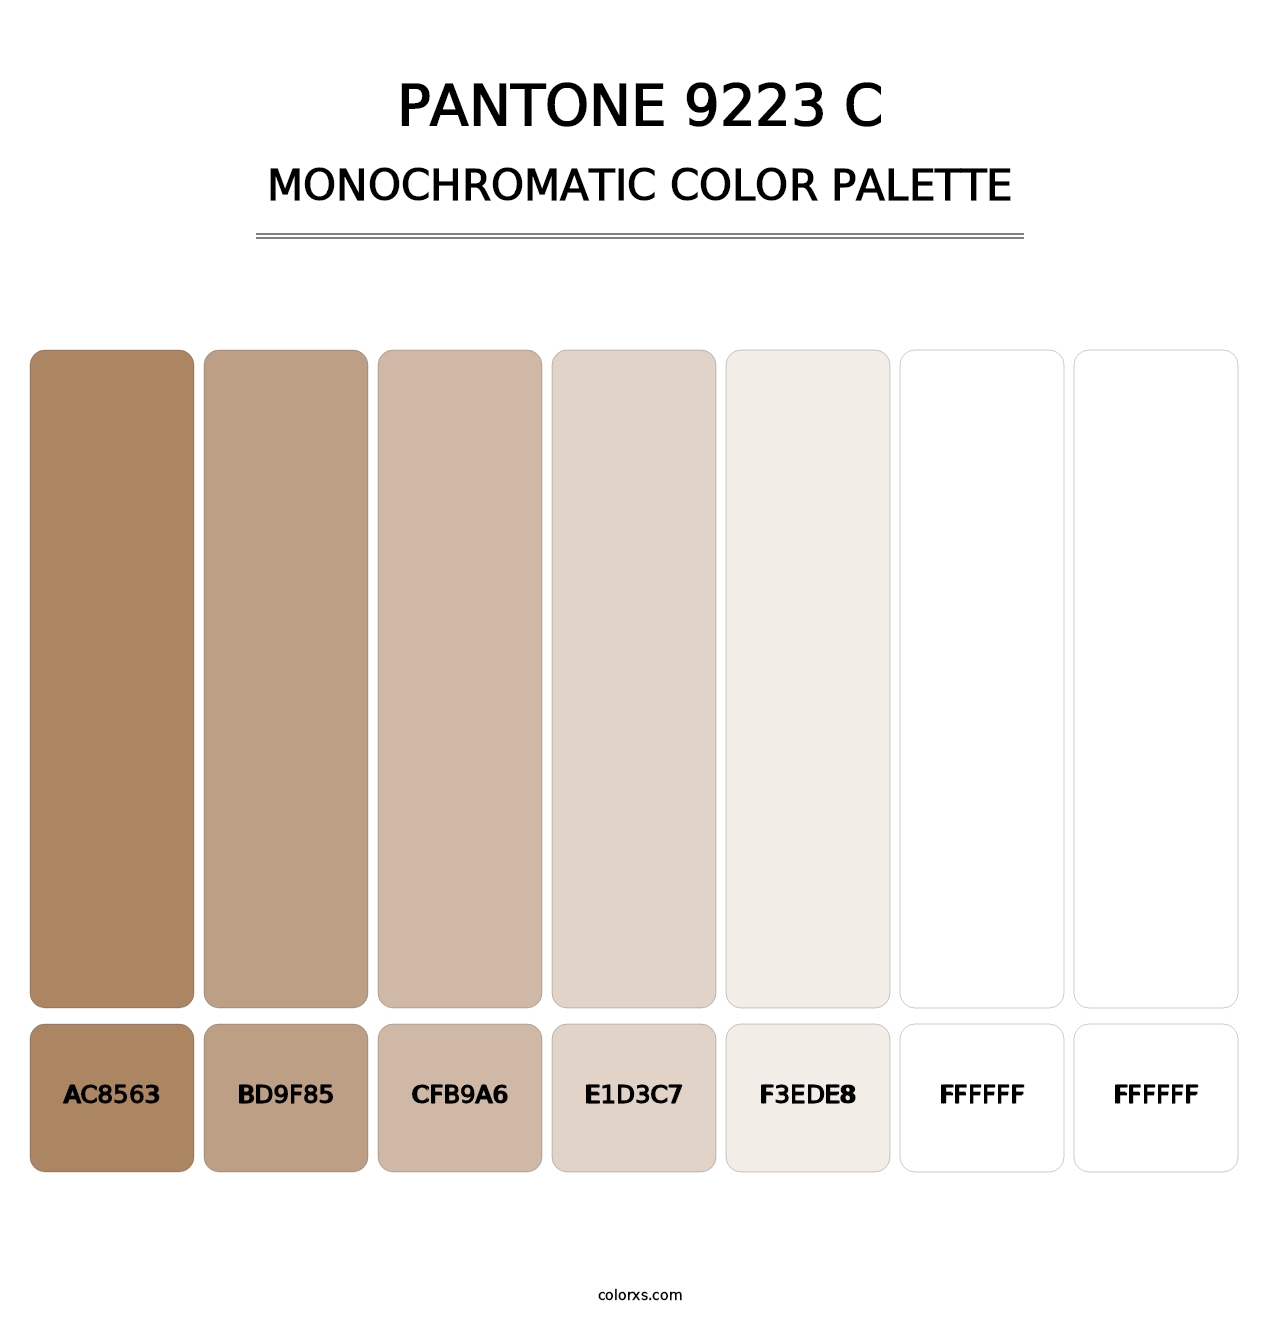 PANTONE 9223 C - Monochromatic Color Palette